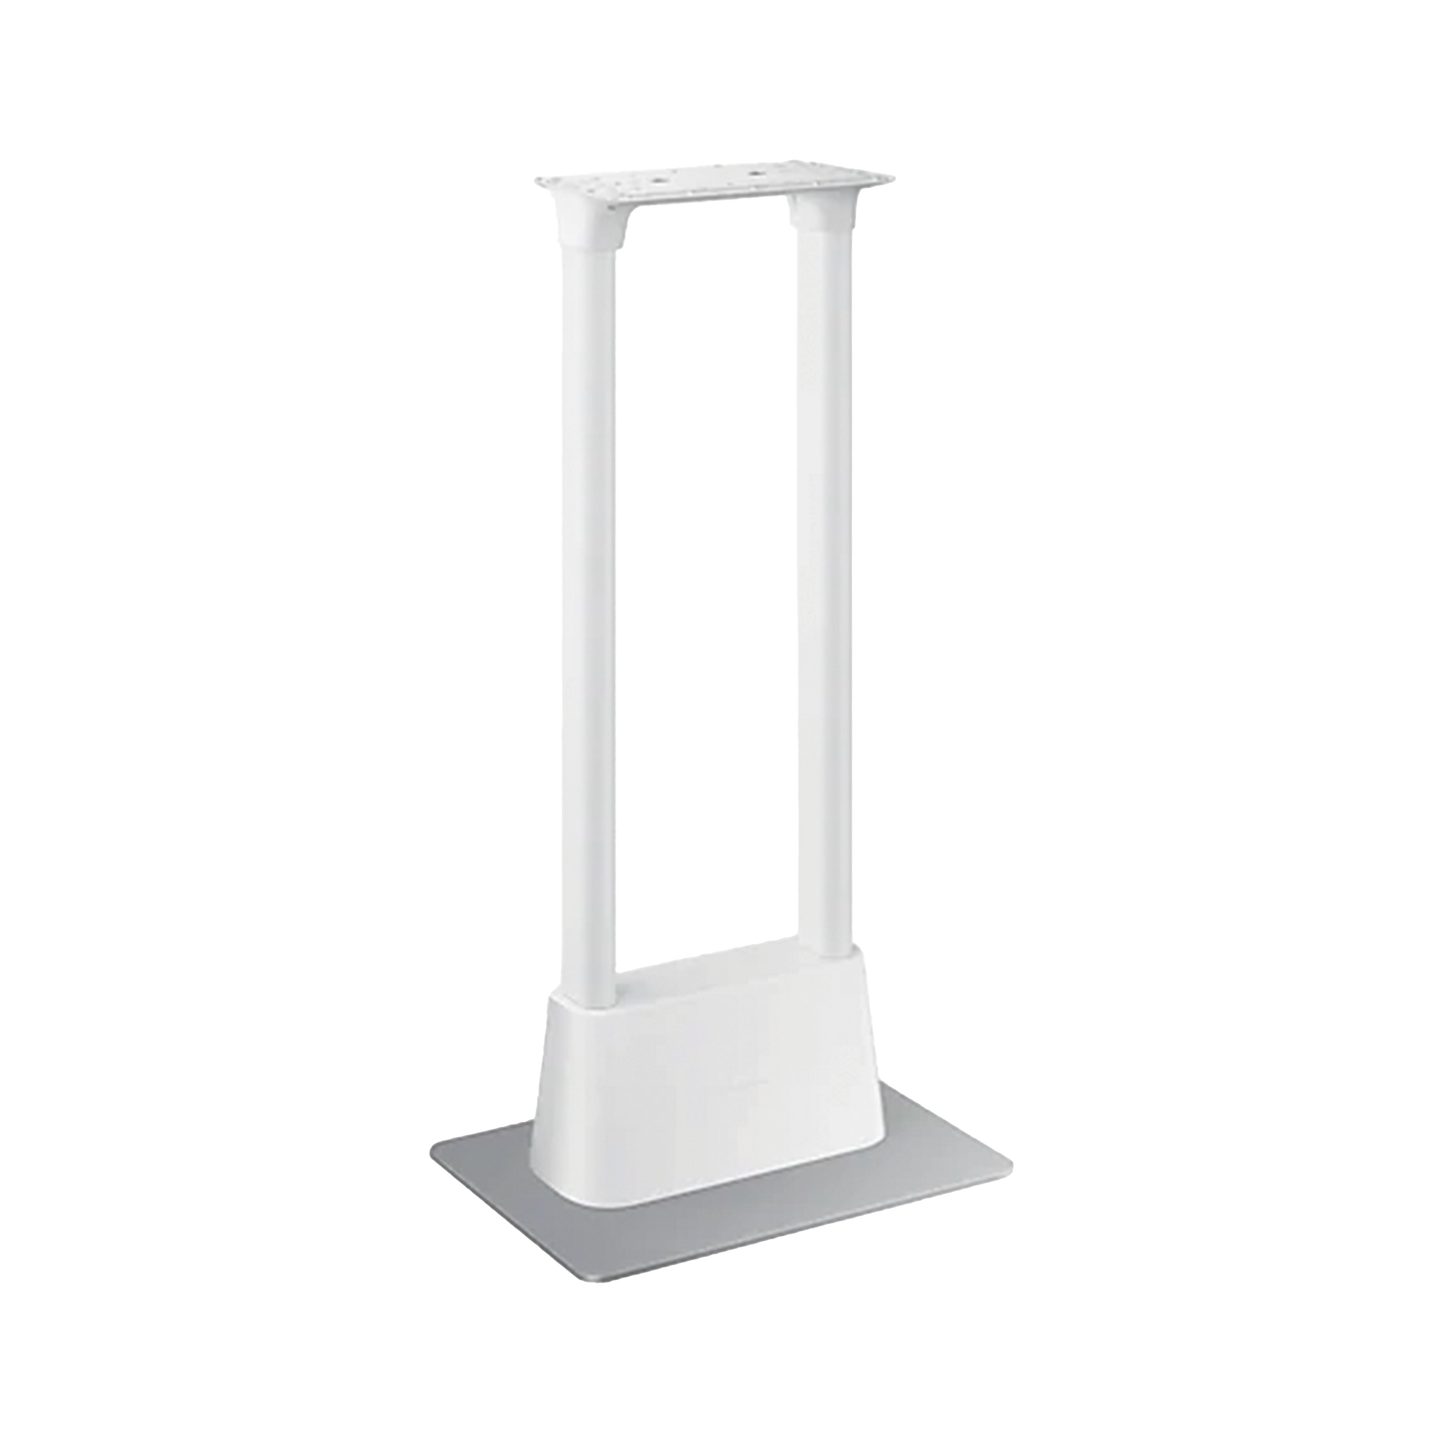 Pedestal para Kiosco Inteligente modelo KM24A o KM24C